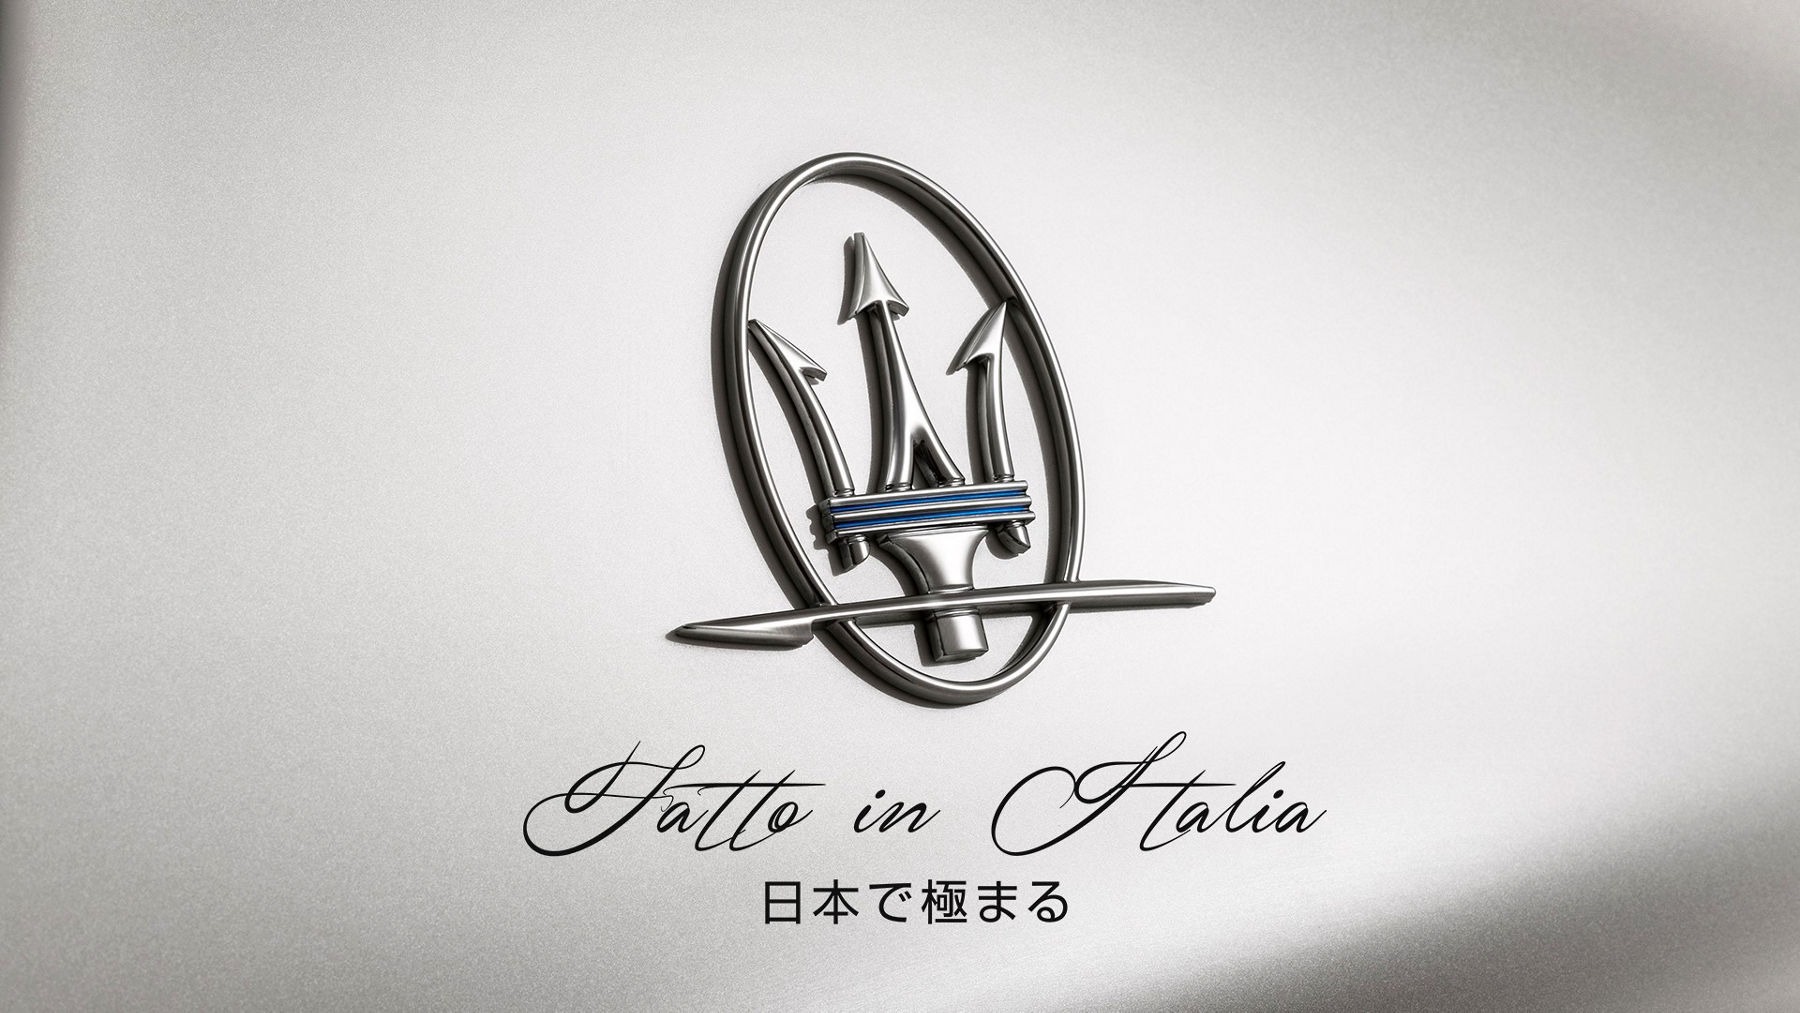 「Fatto in Italia 日本で極まる」　ウェブサイトより